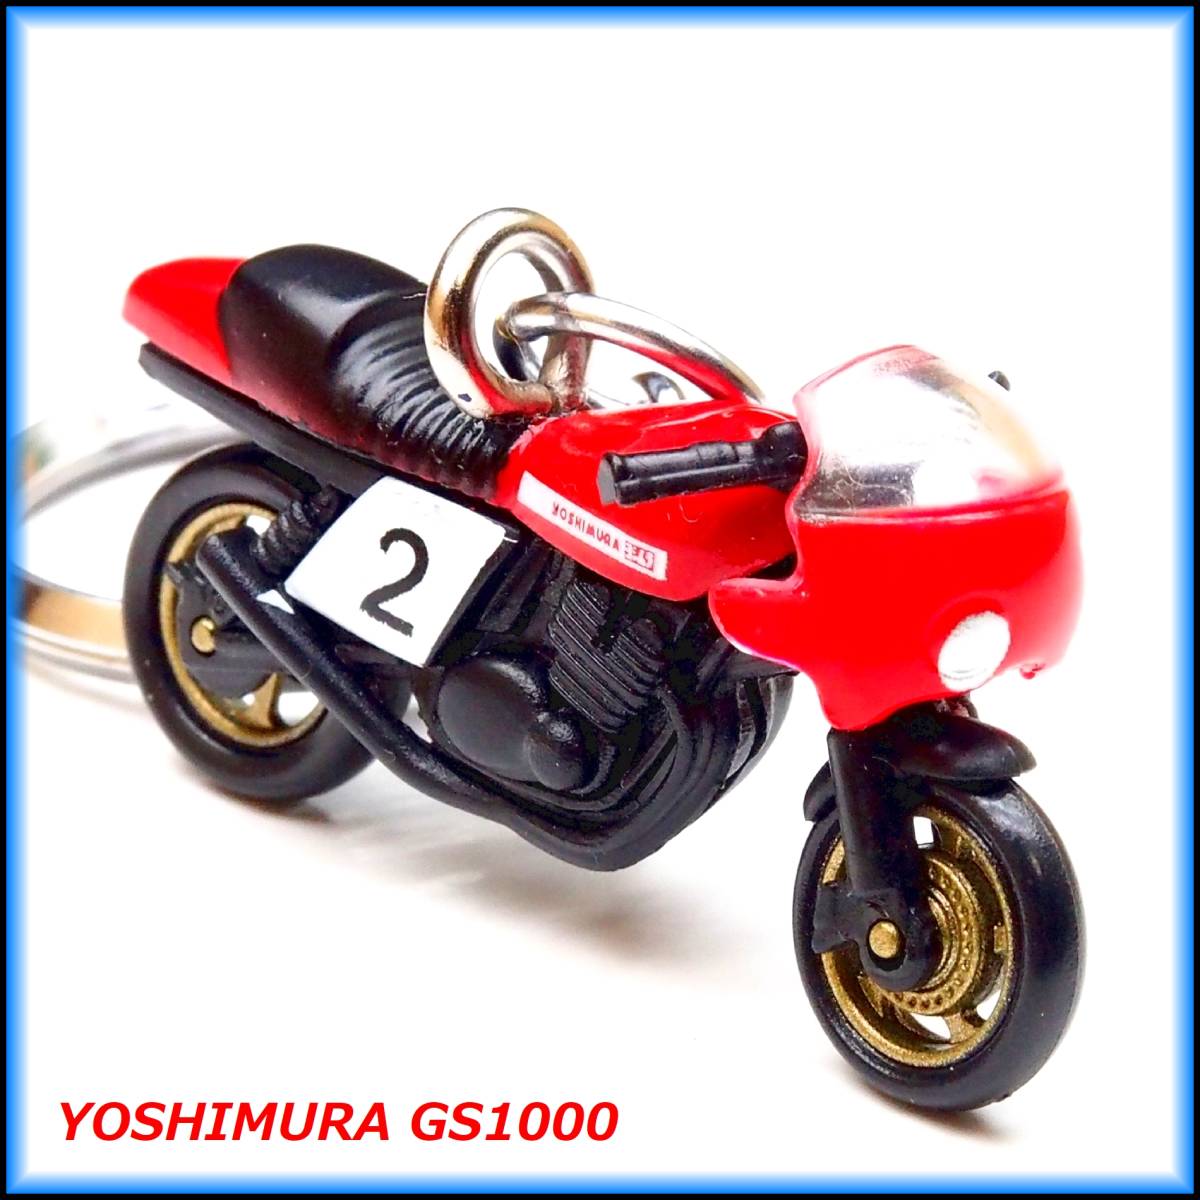 ヨシムラ GS1000 バイク ストラップ キーホルダー マフラー ホイール カウル シート サスペンション ショック タンク ミラー ハンドル_画像2